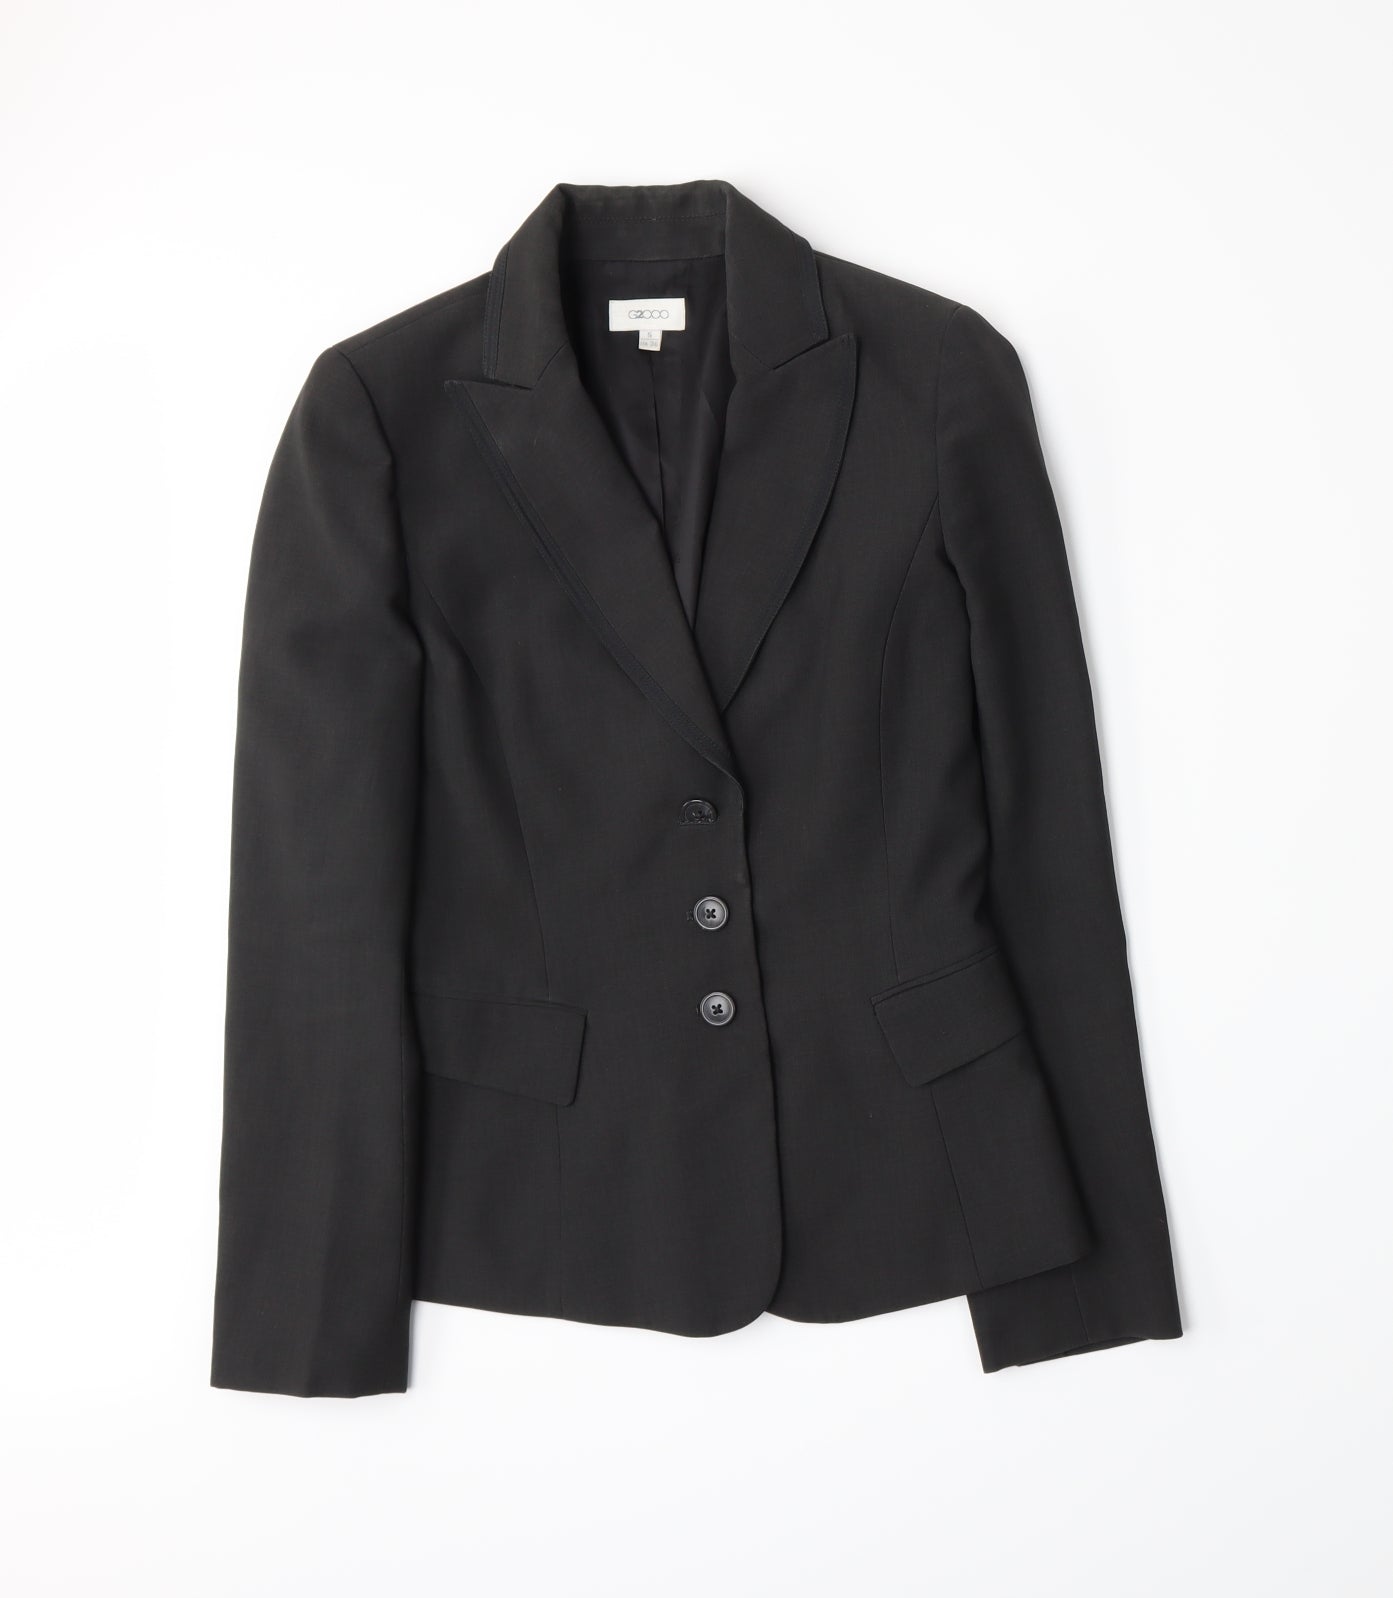 G2000 Womens Grey   Jacket Suit Jacket Size 4